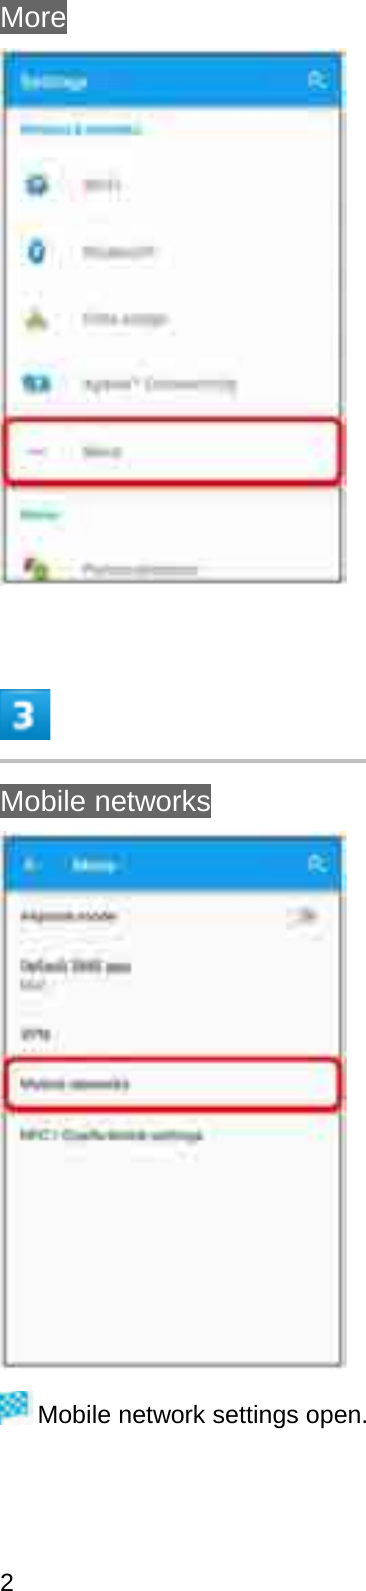 MoreMobile networksMobile network settings open.2